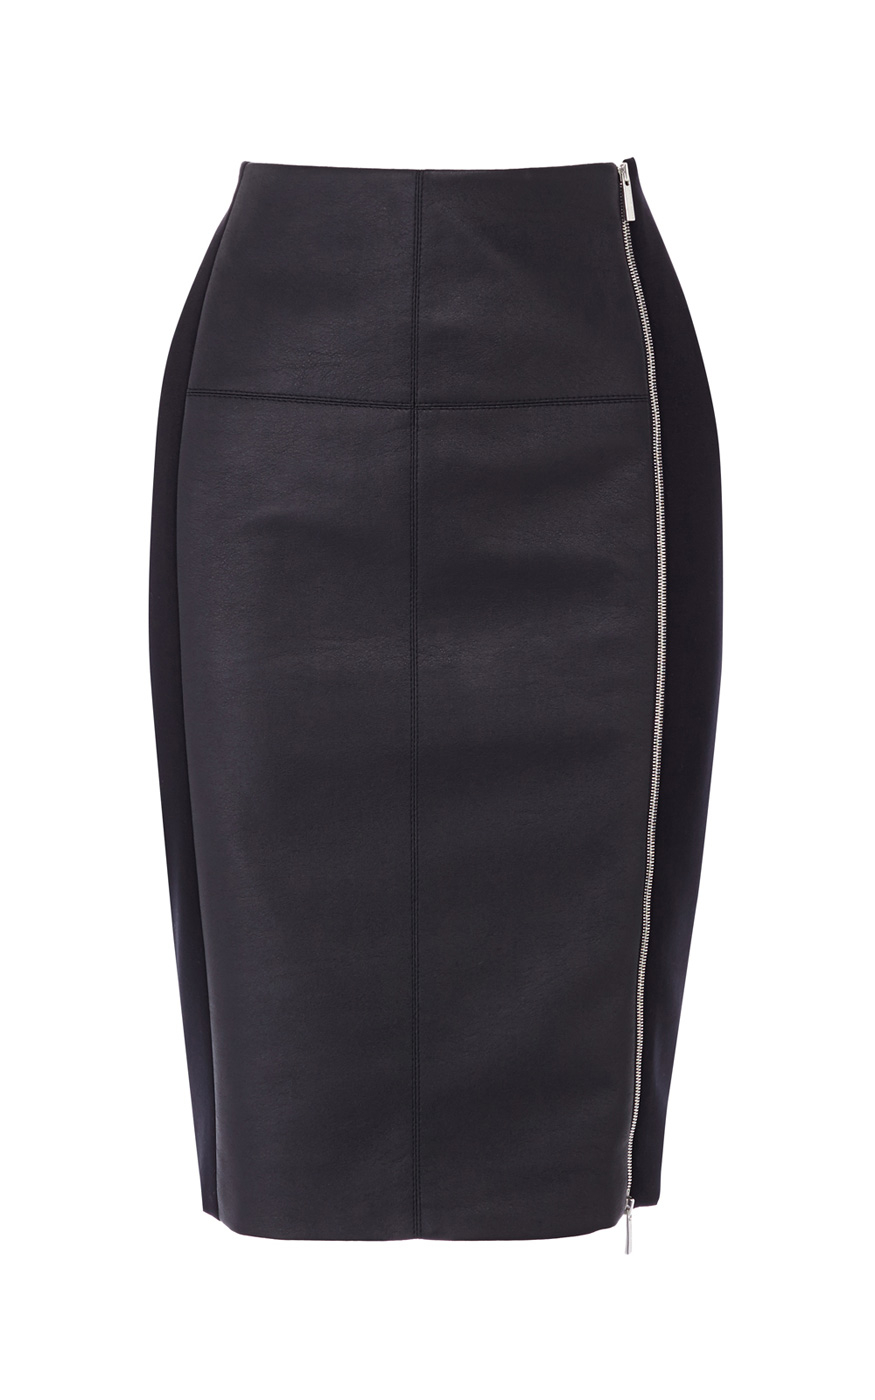 Karen millen Printed Jersey Pencil Skirt in Black | Lyst